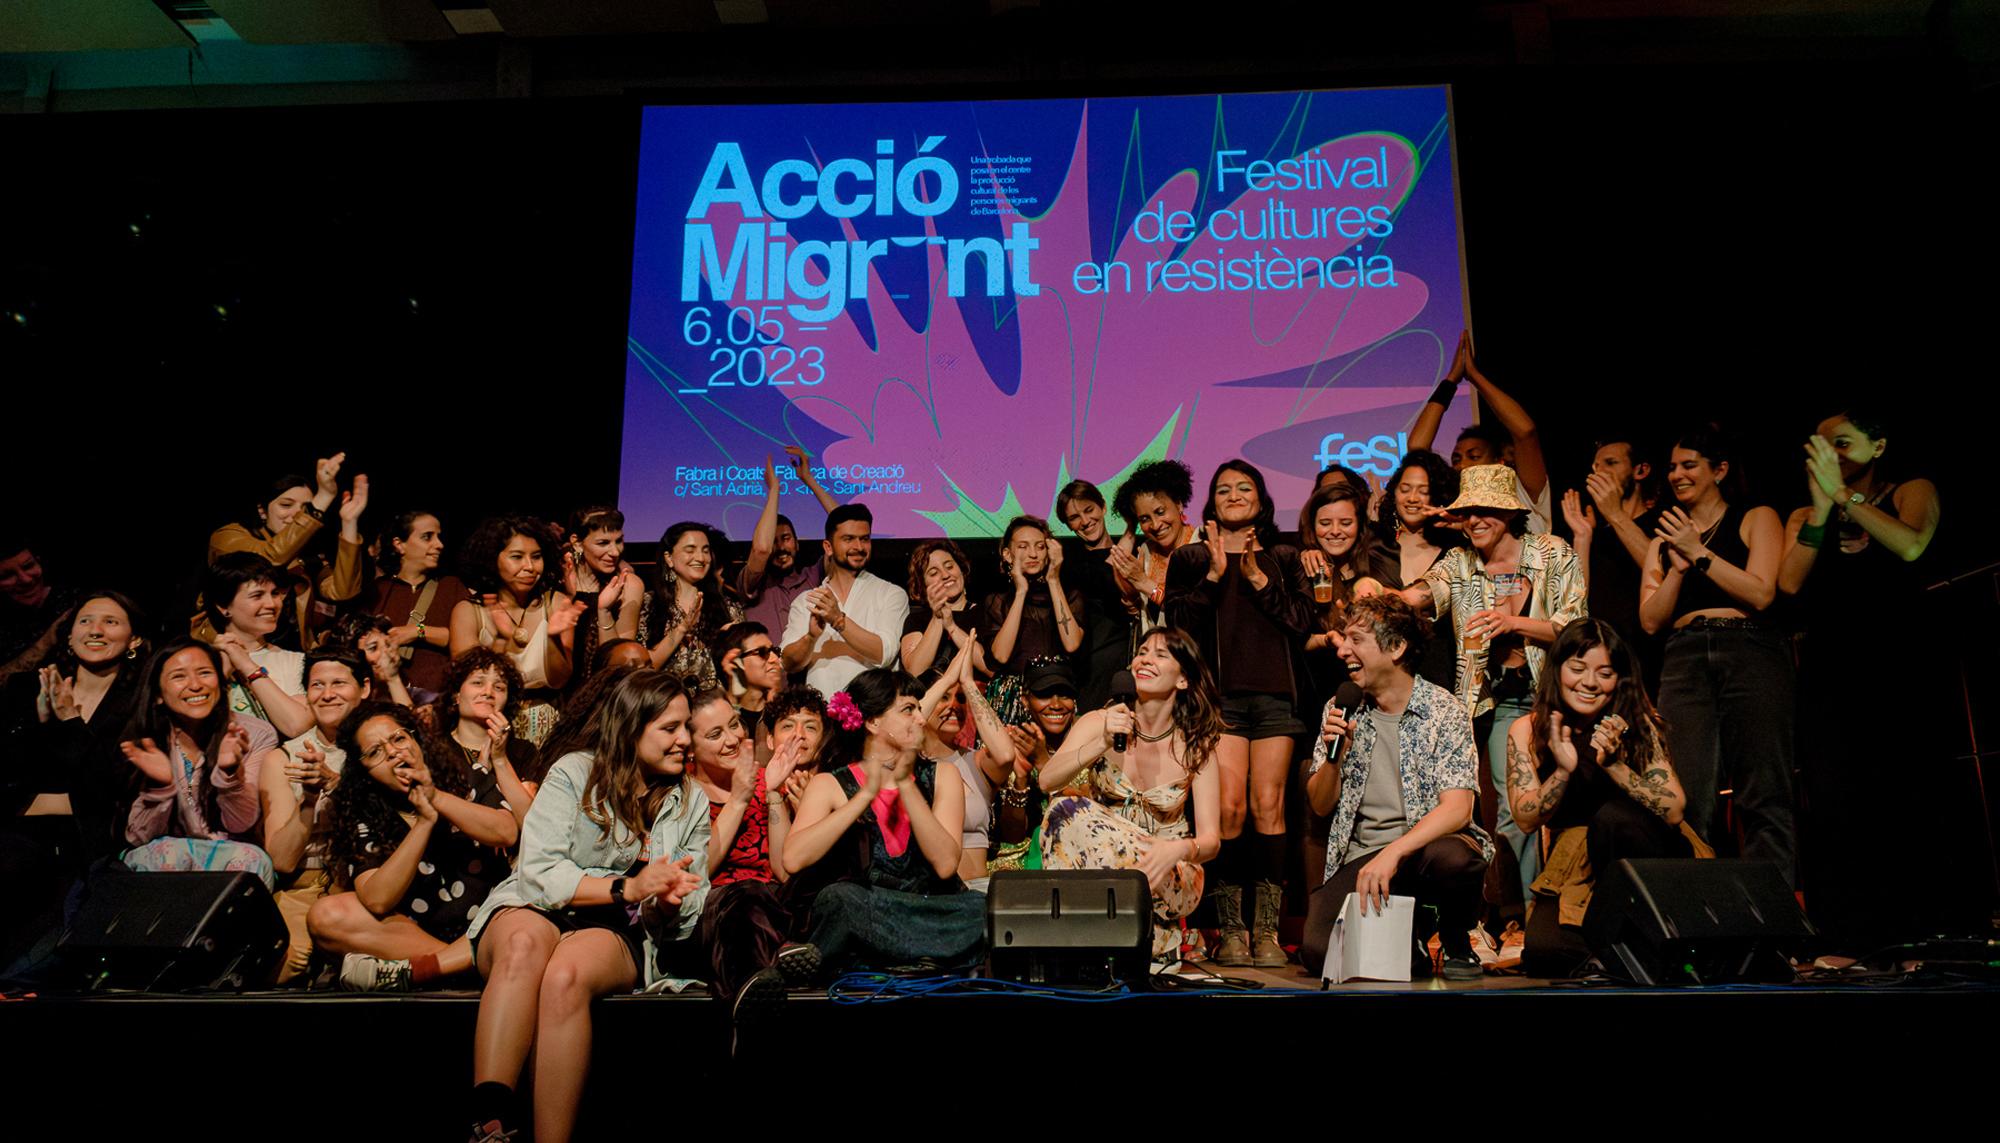 AccióMigrant: Festival de Culturas en resistencia